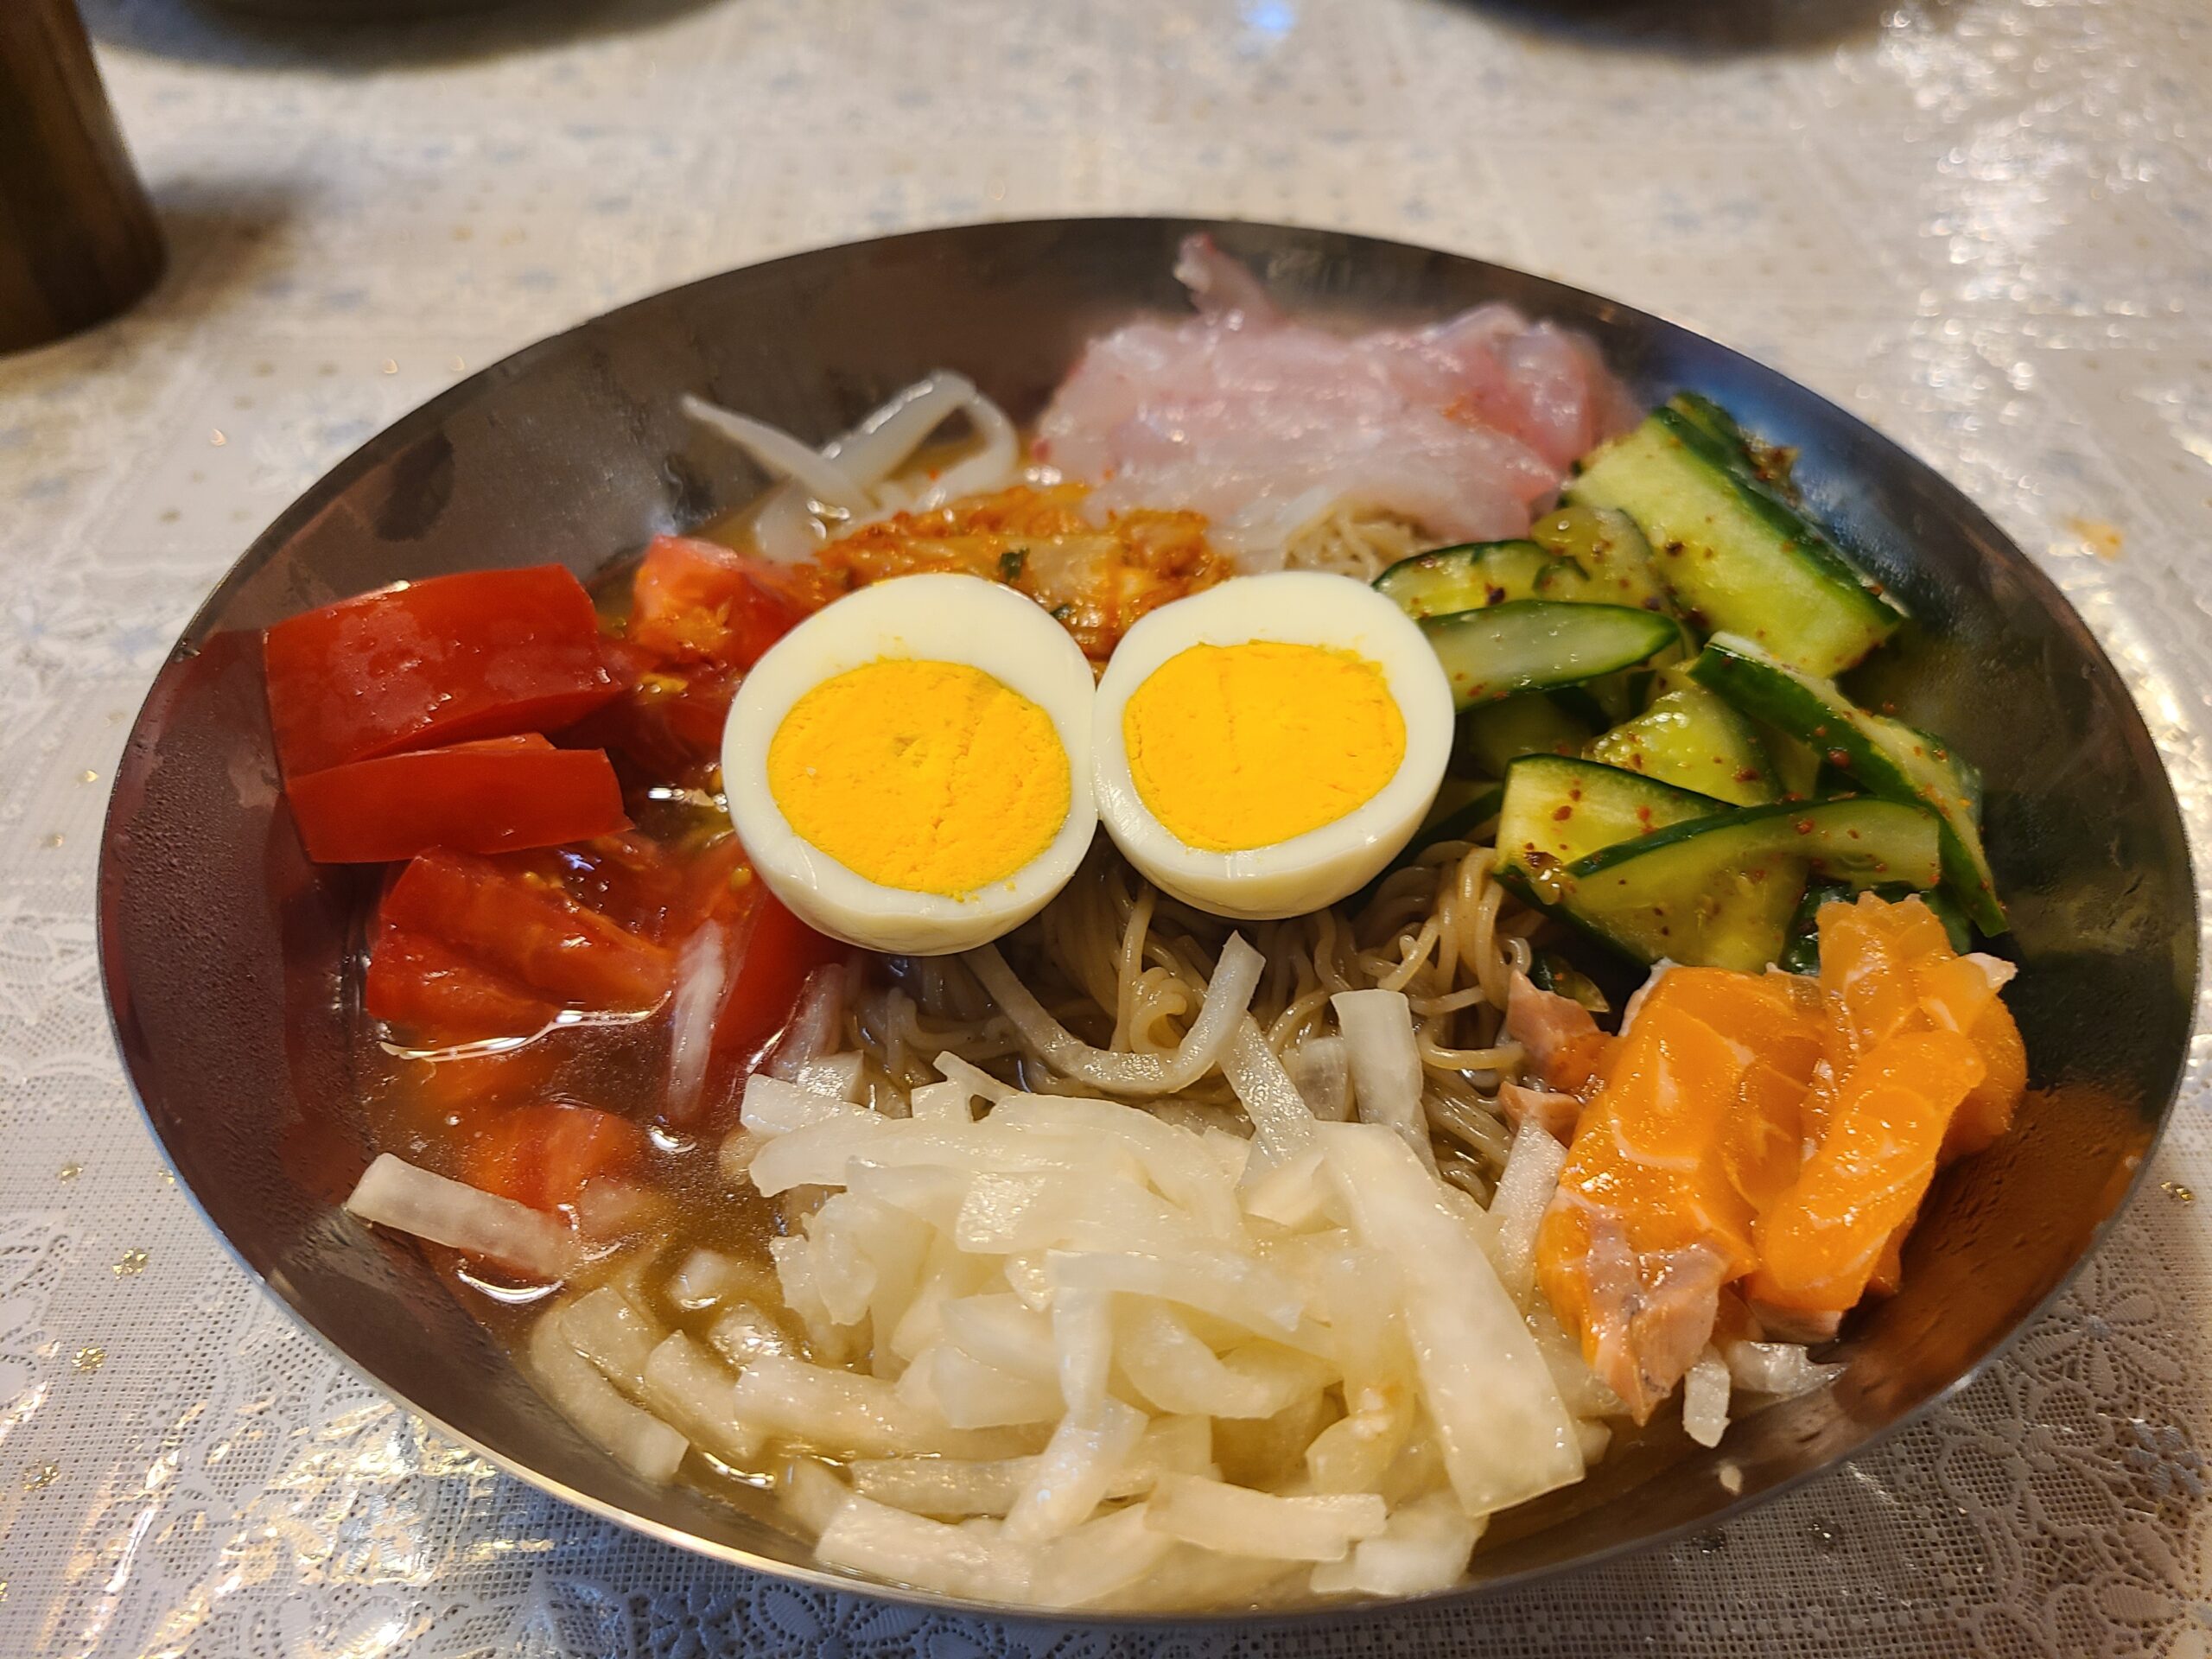 自作した韓国冷麺を撮影した画像です